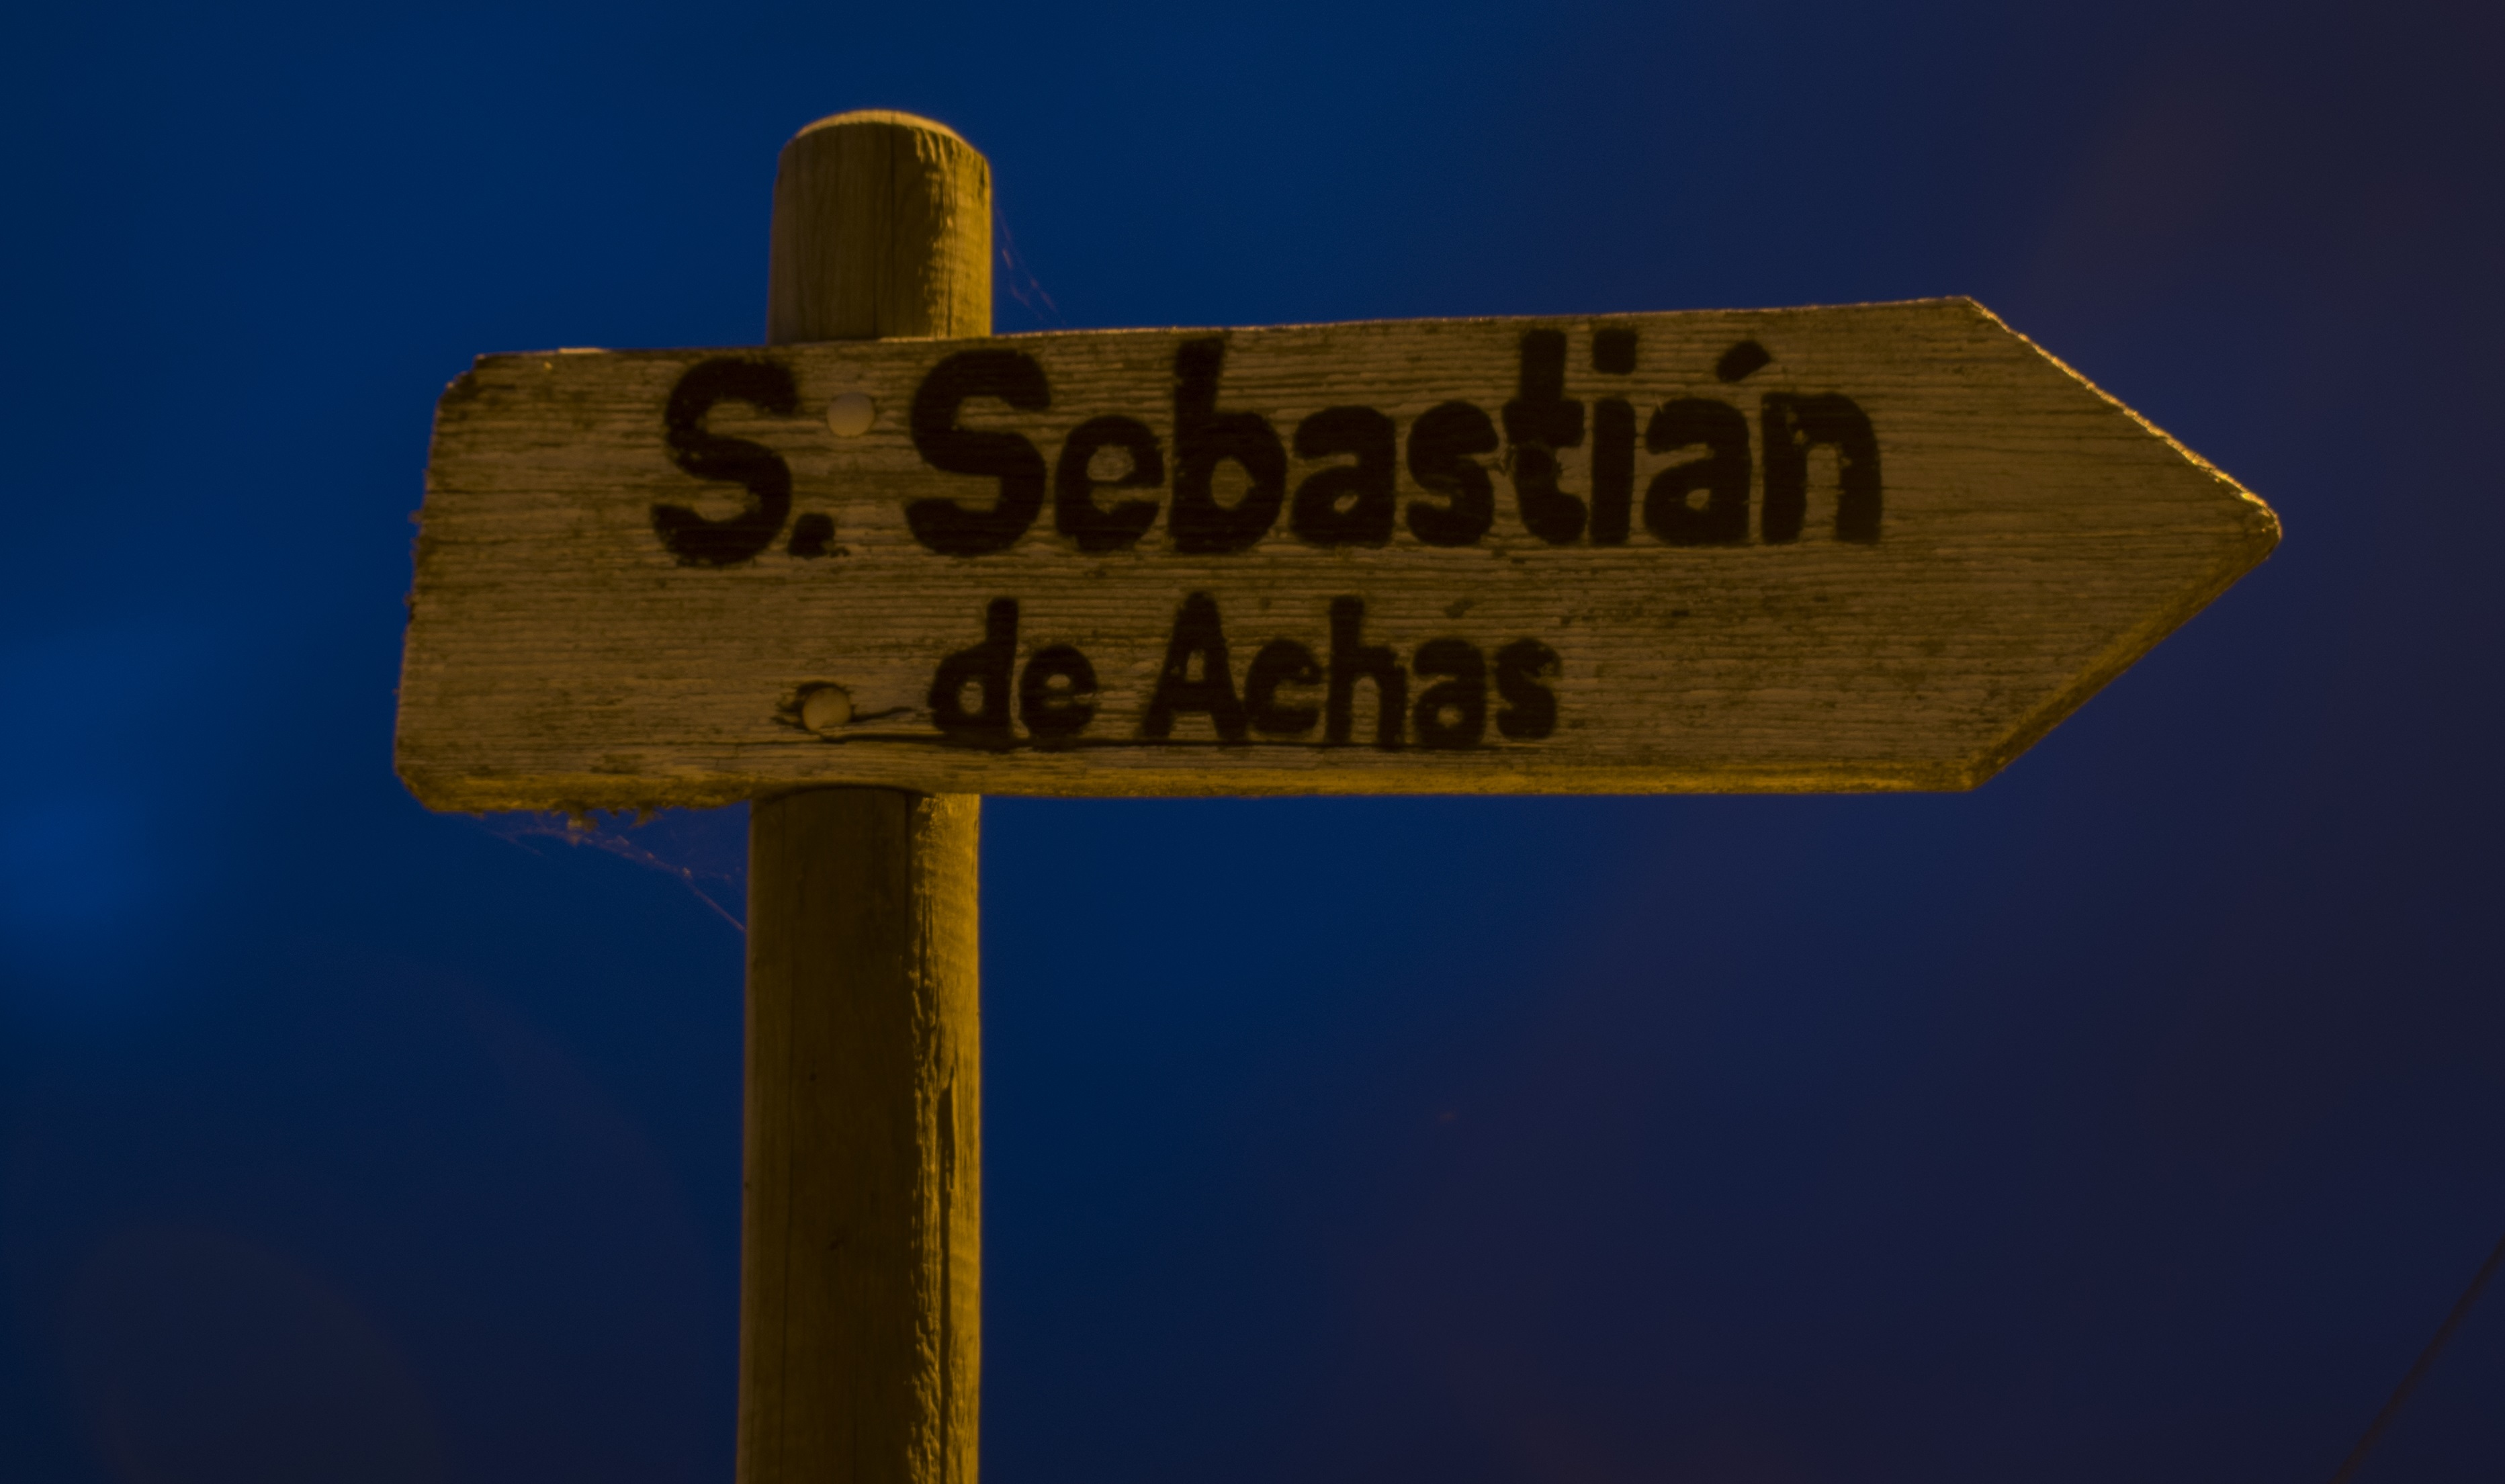 San Sebastian de Achas